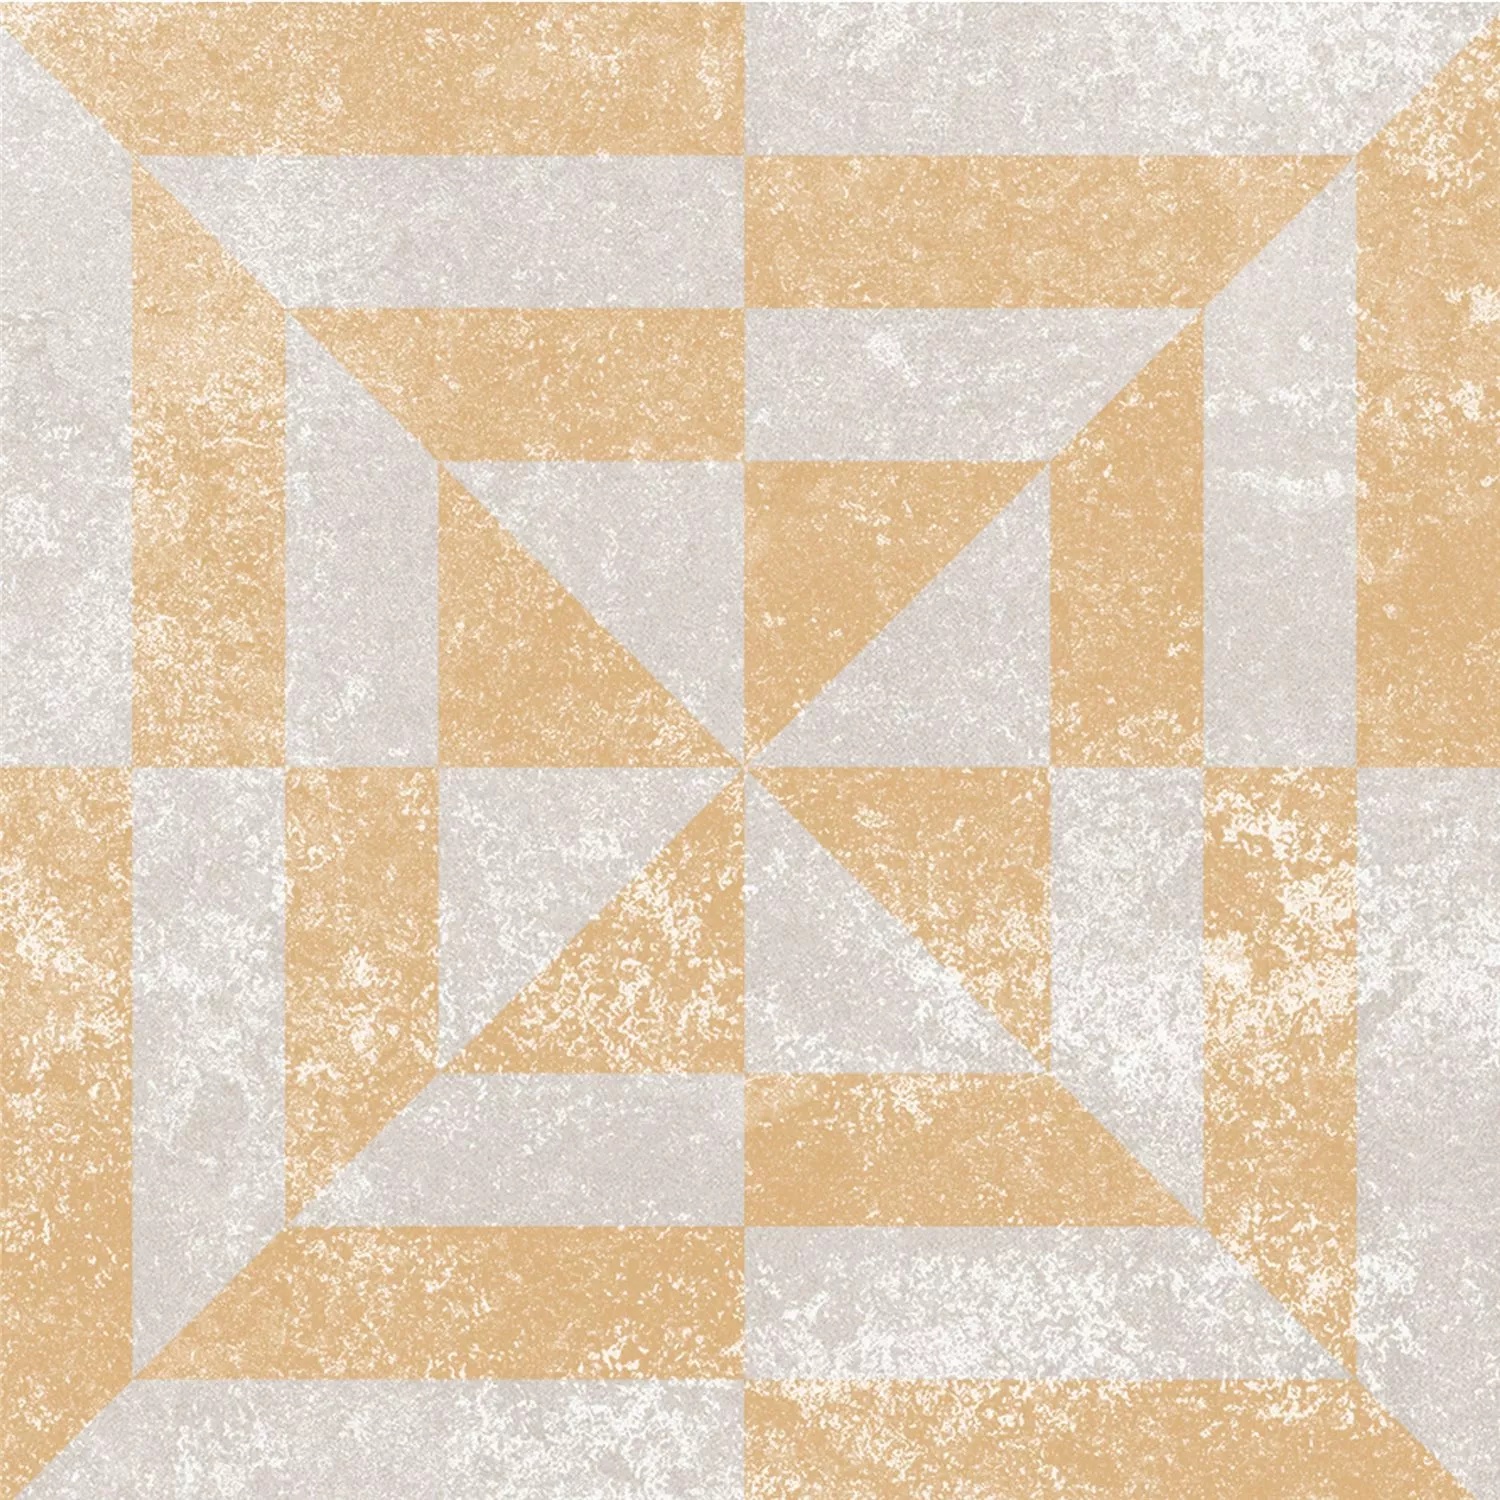 Πρότυπο Πλακάκι Δαπέδου Εμφάνιση Tσιμέντου Toulon Mora 18,6x18,6cm